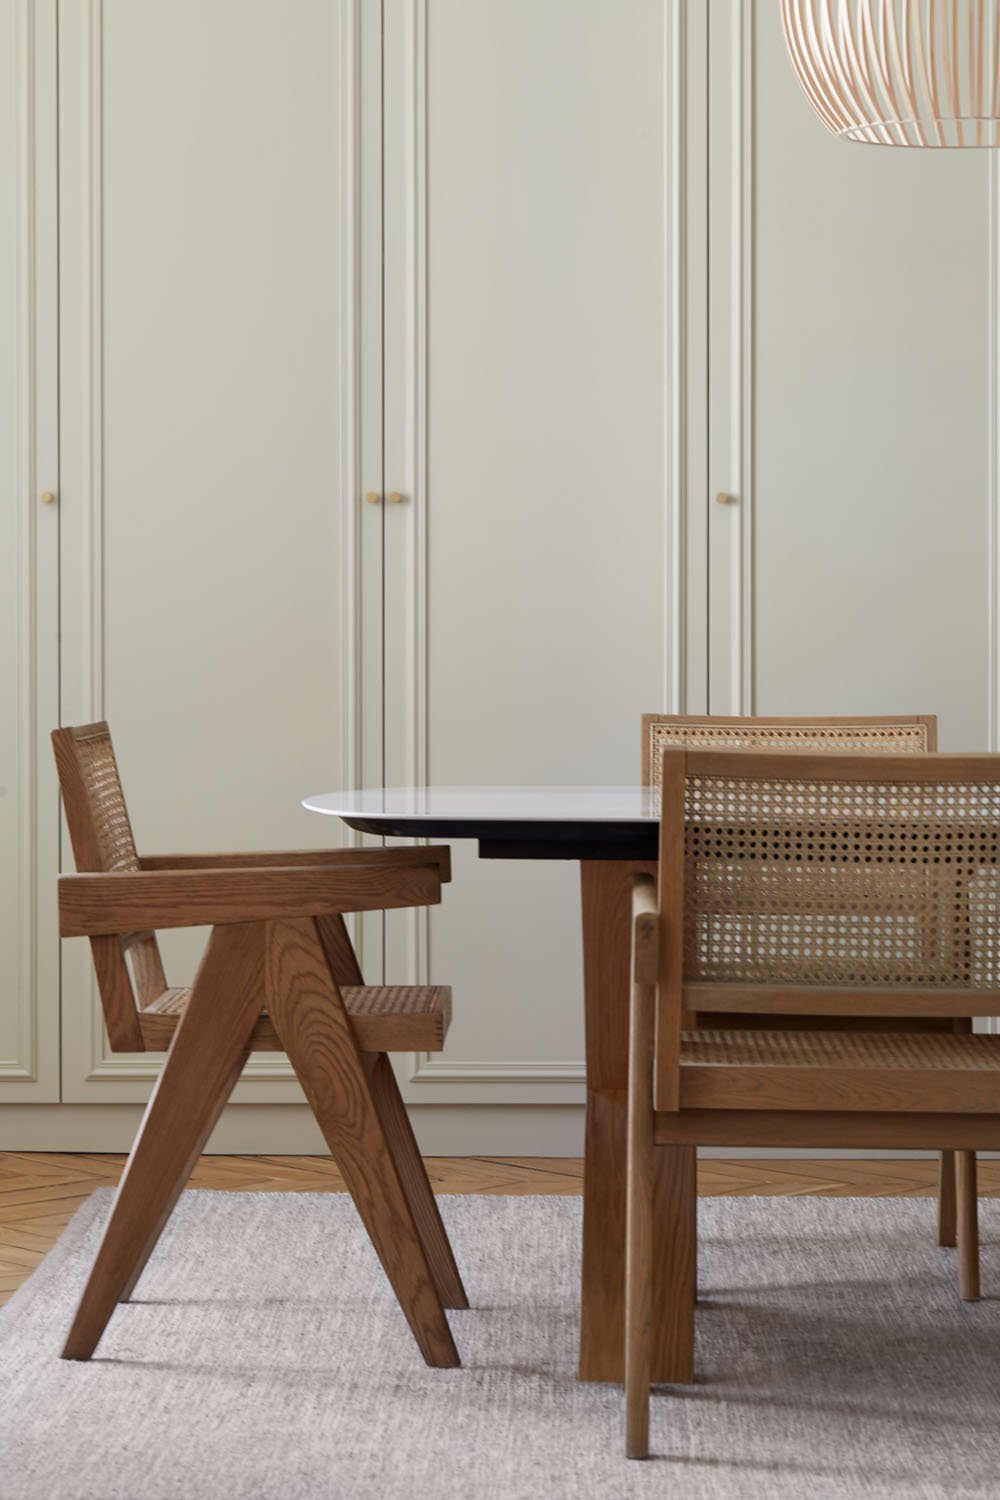 lichelle-silvestry-interior-design-wooden-chair-details.jpg